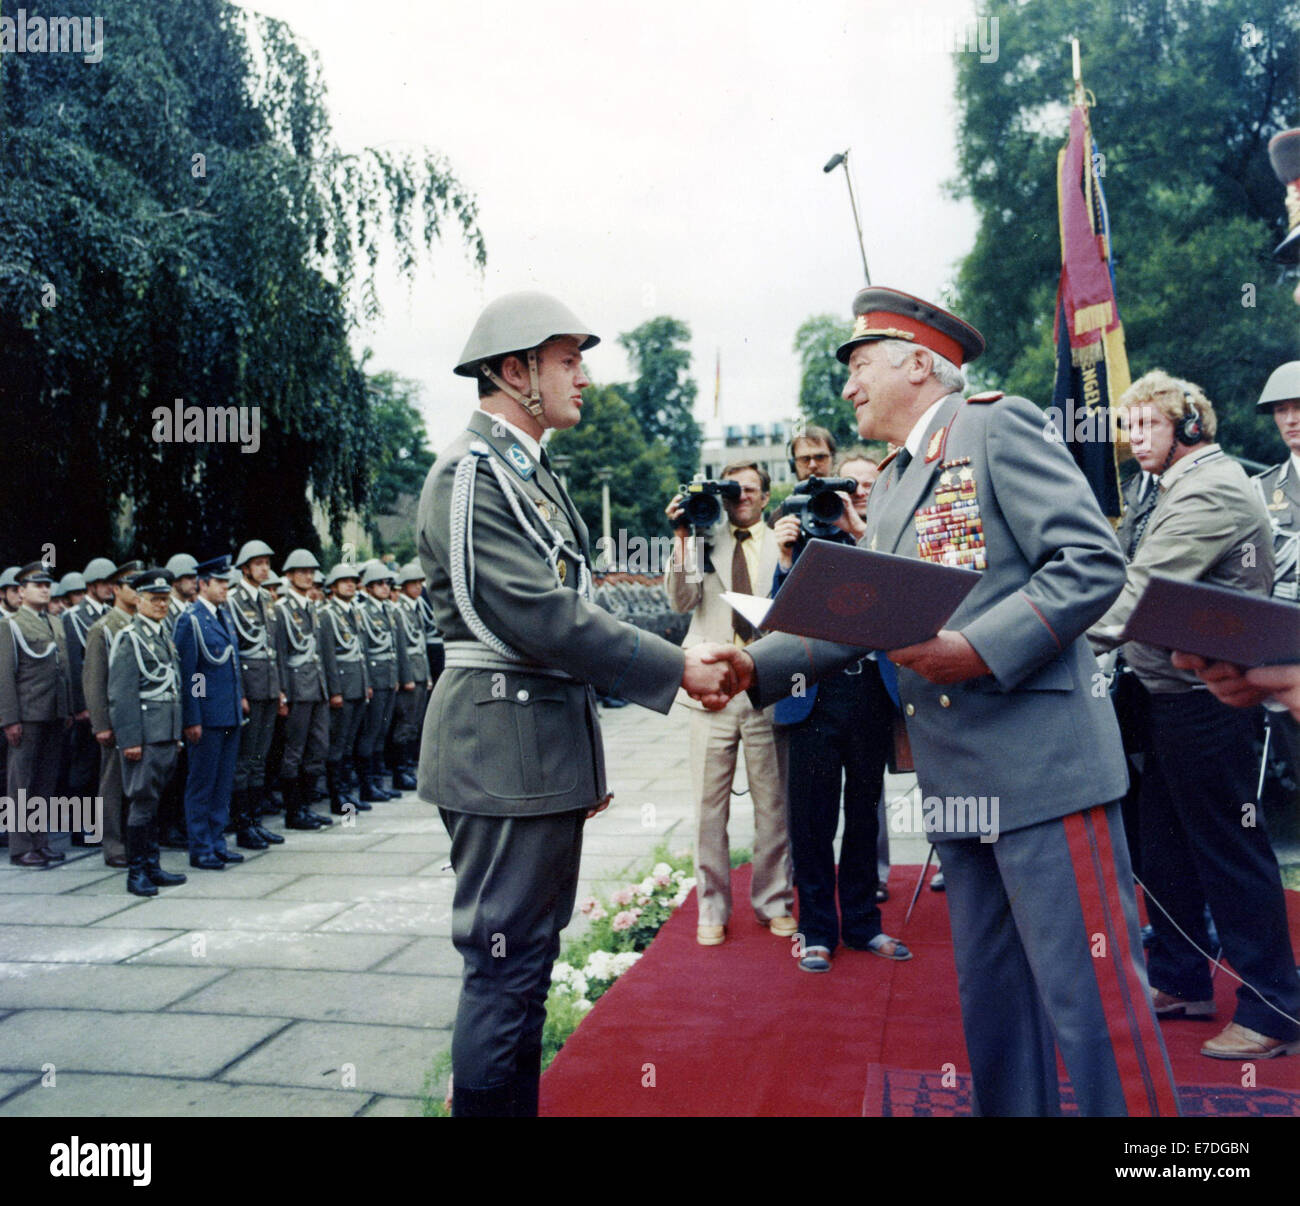 Le ministre de la défense de la RDA, général des forces armées de la RDA Heinz Hoffmann (R), présente des anciens de l'académie militaire "Friedrich Engels' avec leur diplôme à Dresde en juillet 1983. Photo : Ulrich Haessler Banque D'Images